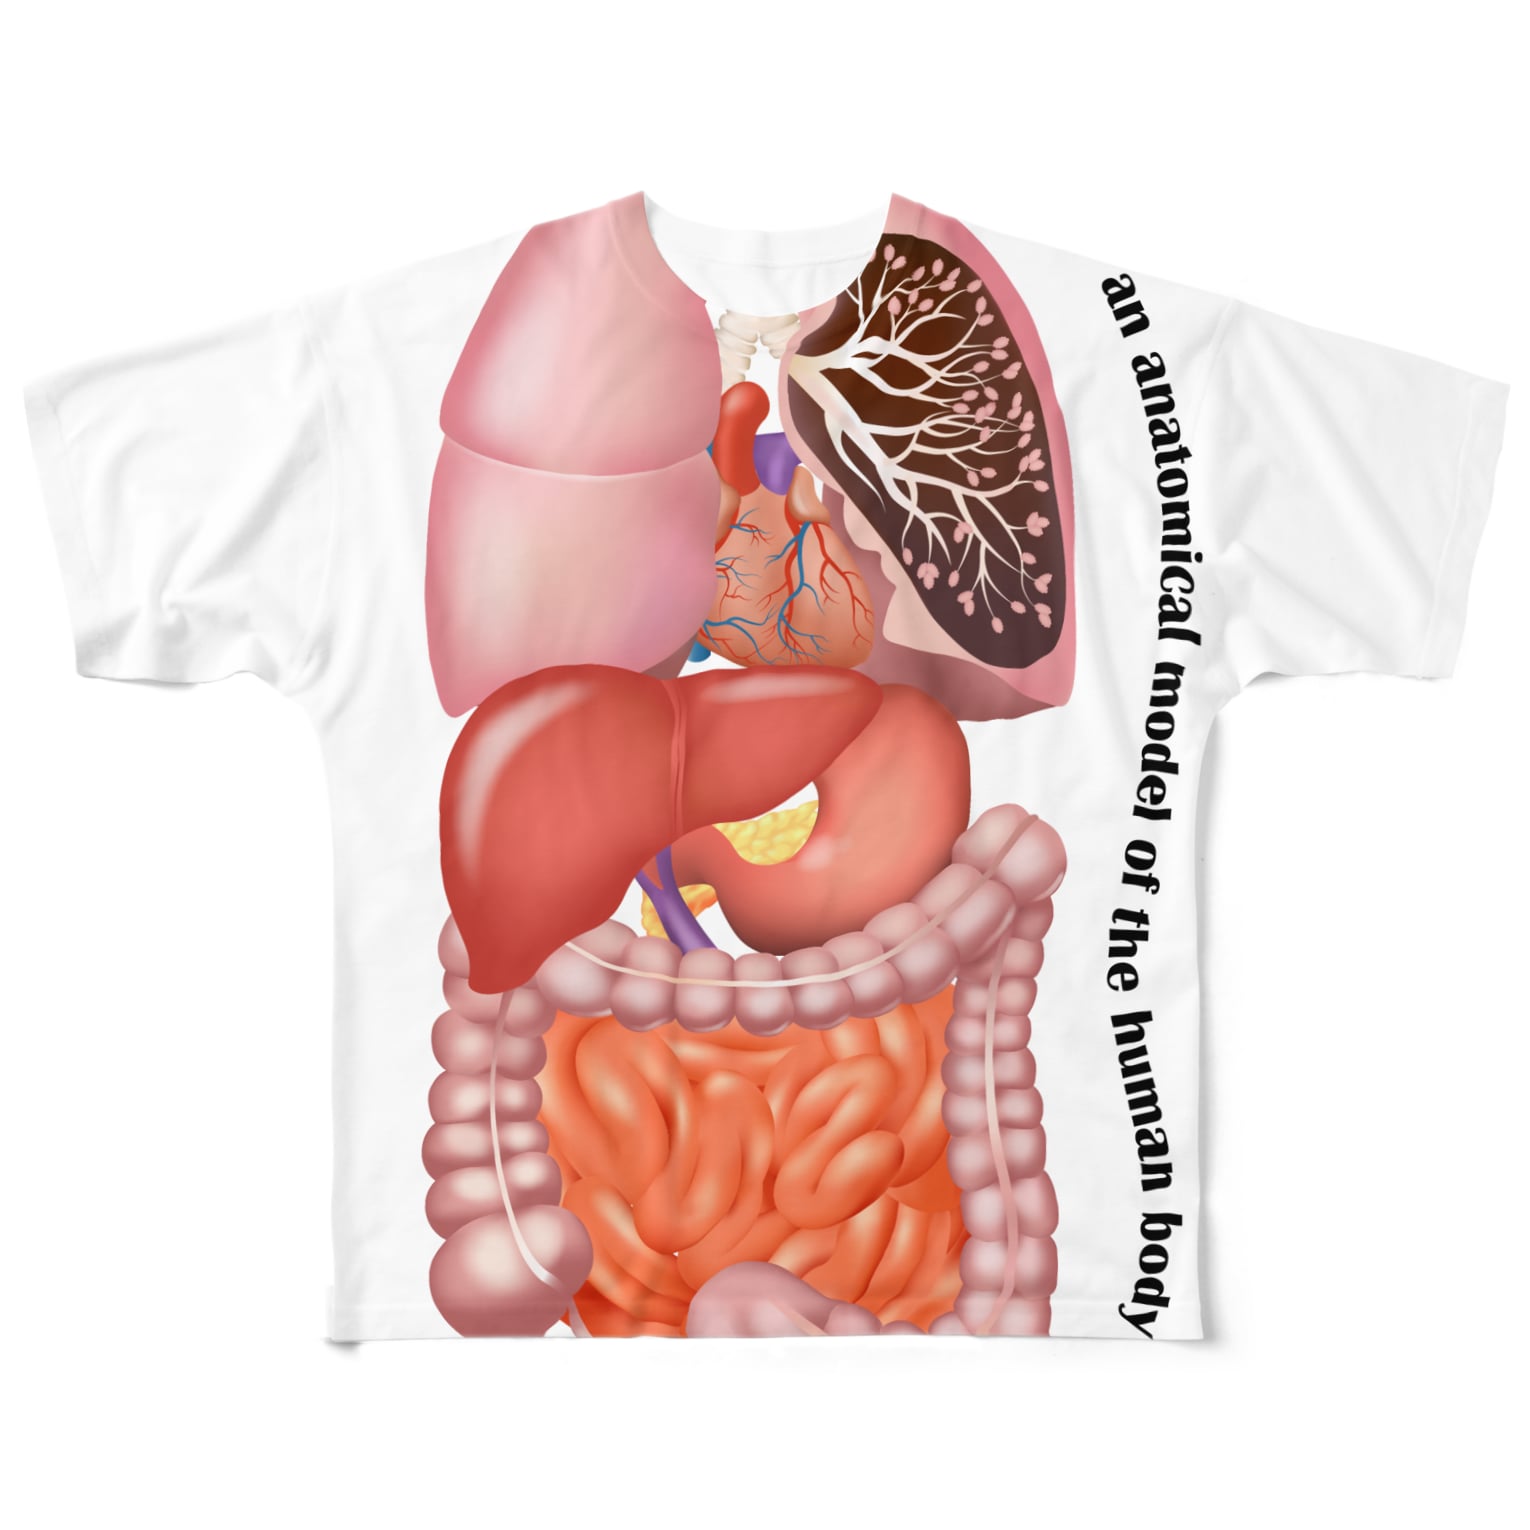 人体 臓器 イラスト臓器 人体 模型 イラスト 無料イラスト素材画像